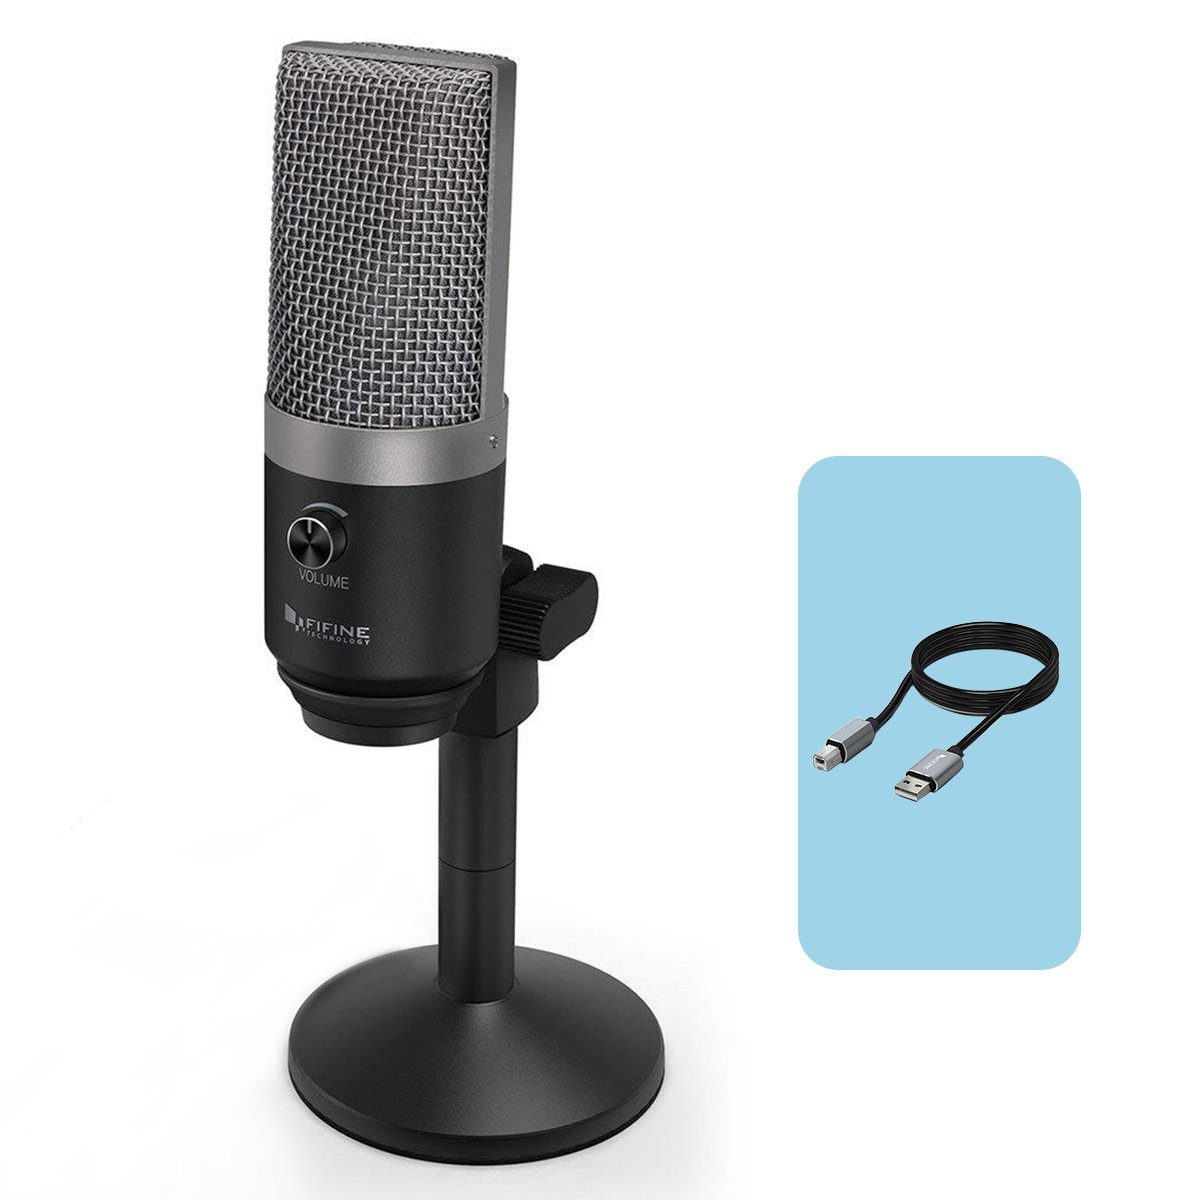 FIFINE Mikrofon »USB Mikrofon Streaming mit Ständer, PC Mac Mikrofon Gaming  mit Kopfhöreranschluss und Lautstärkeregler, Kondensator Mikrofone  Optimiert für Aufnahme, Voice Over, Podcast, Youtube, Skype« online kaufen  | OTTO